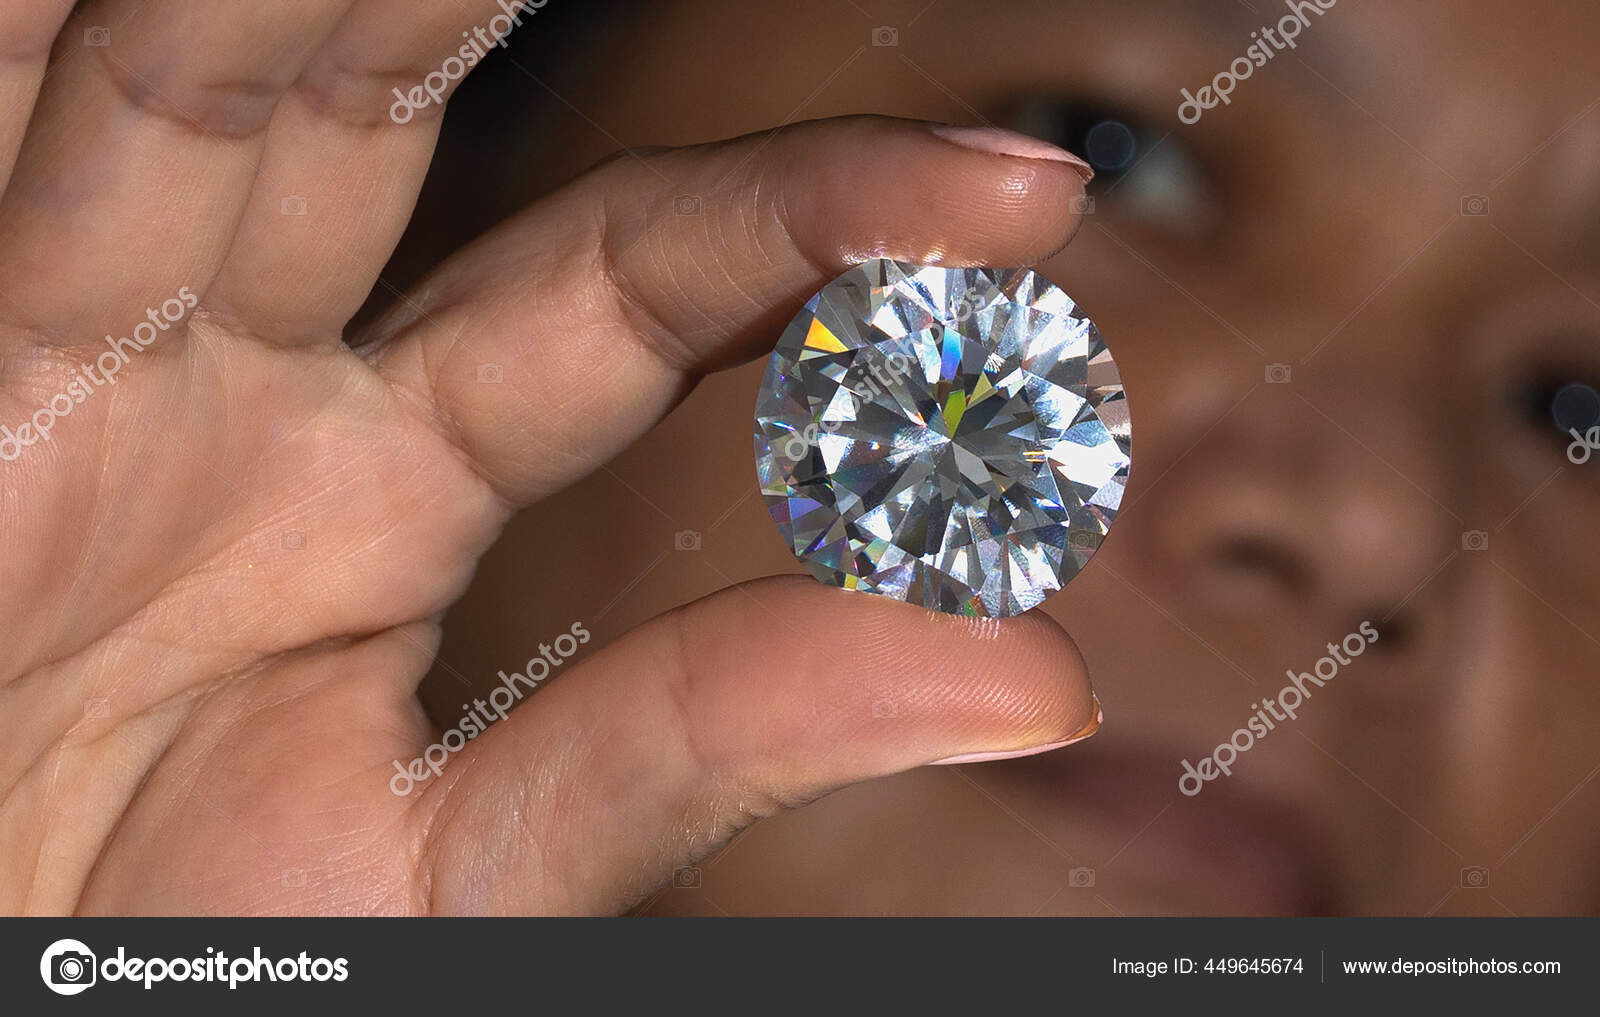 Diamond Size Chart, Size of Diamonds by MM